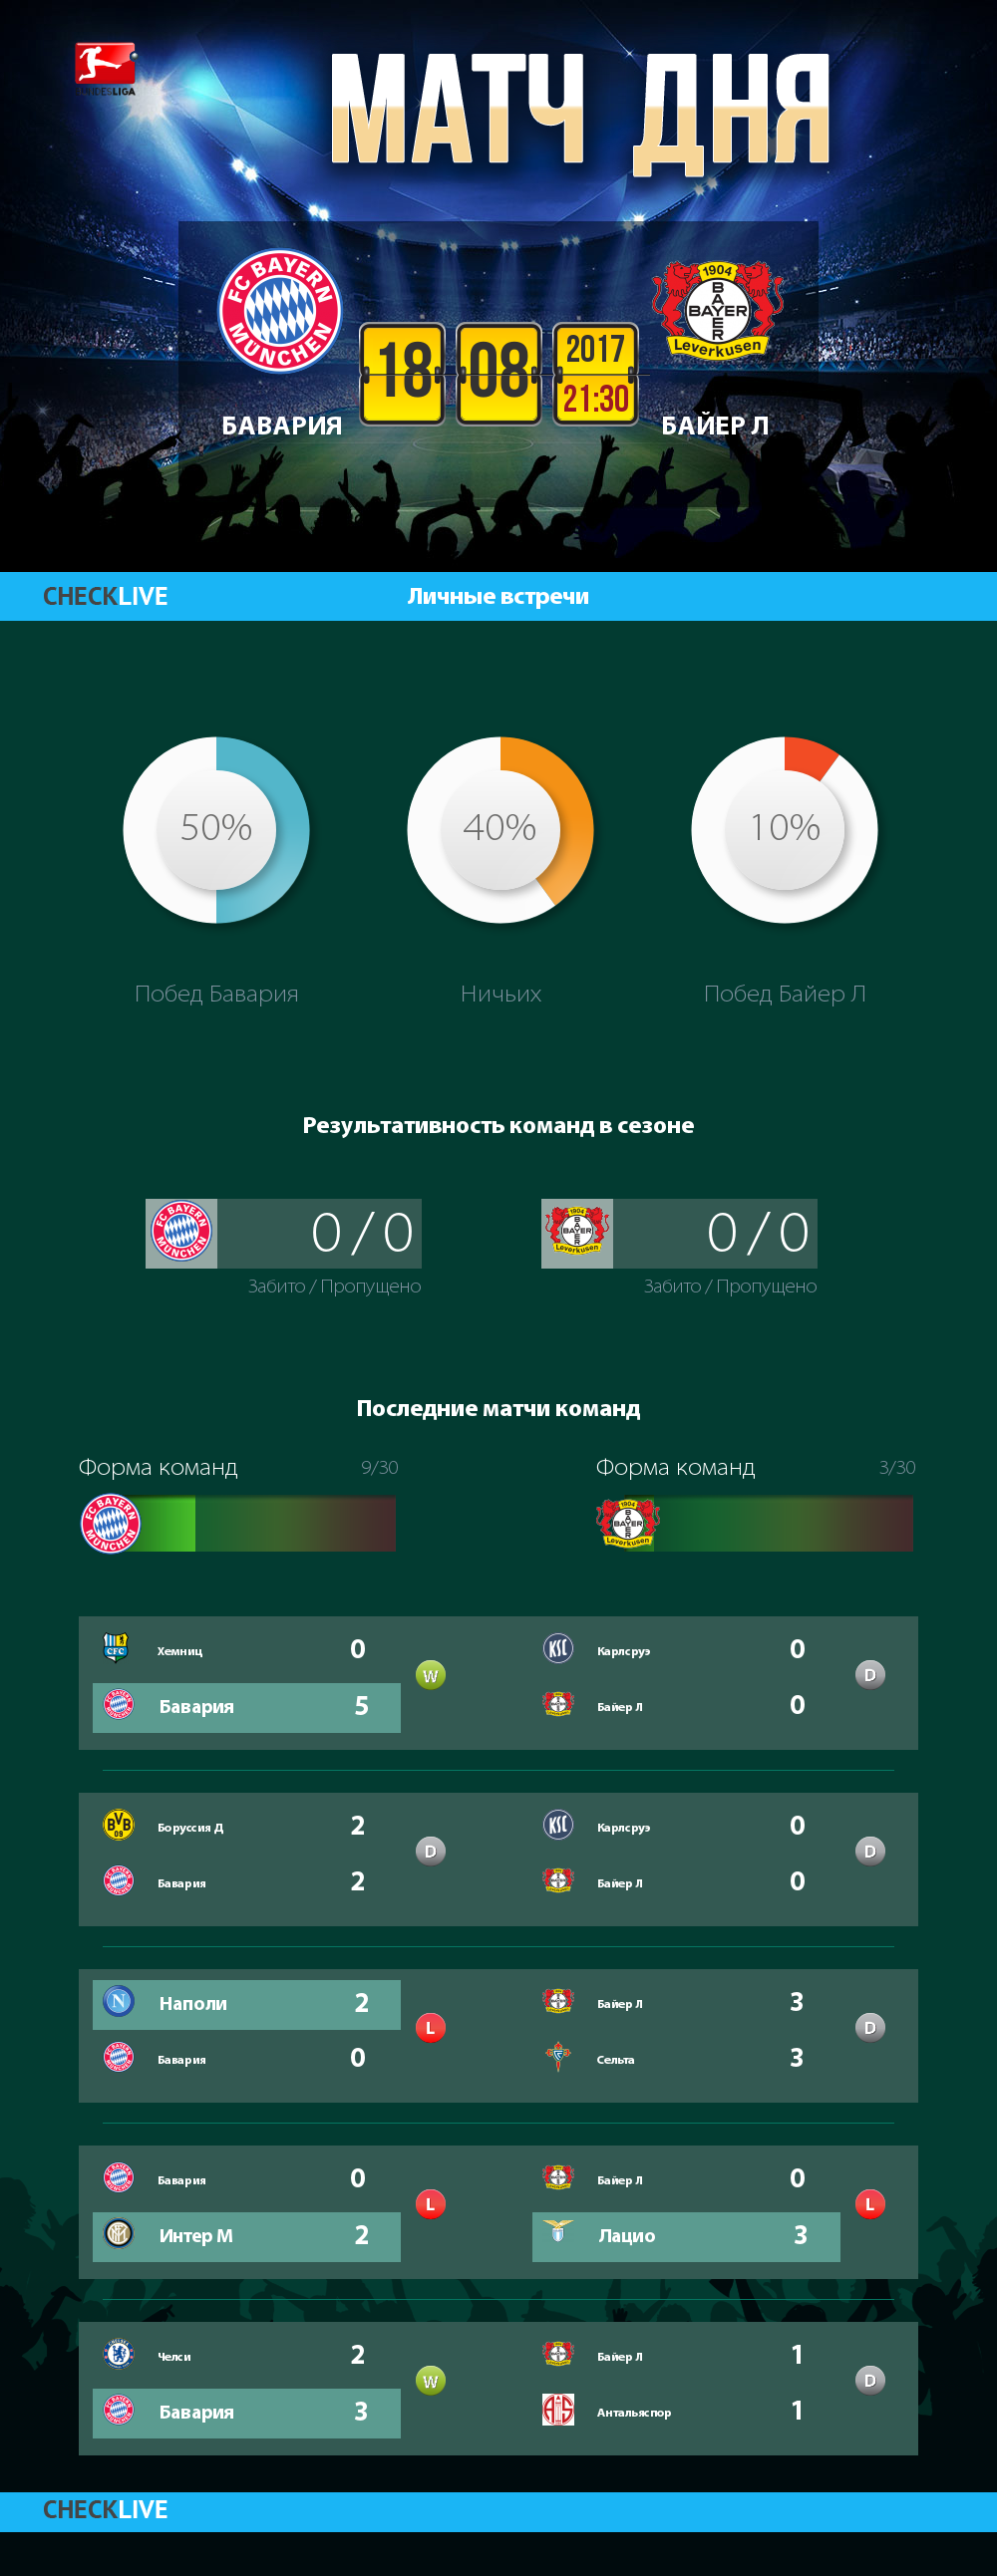 Инфографика Бавария и Байер Л матч дня 18.08.2017